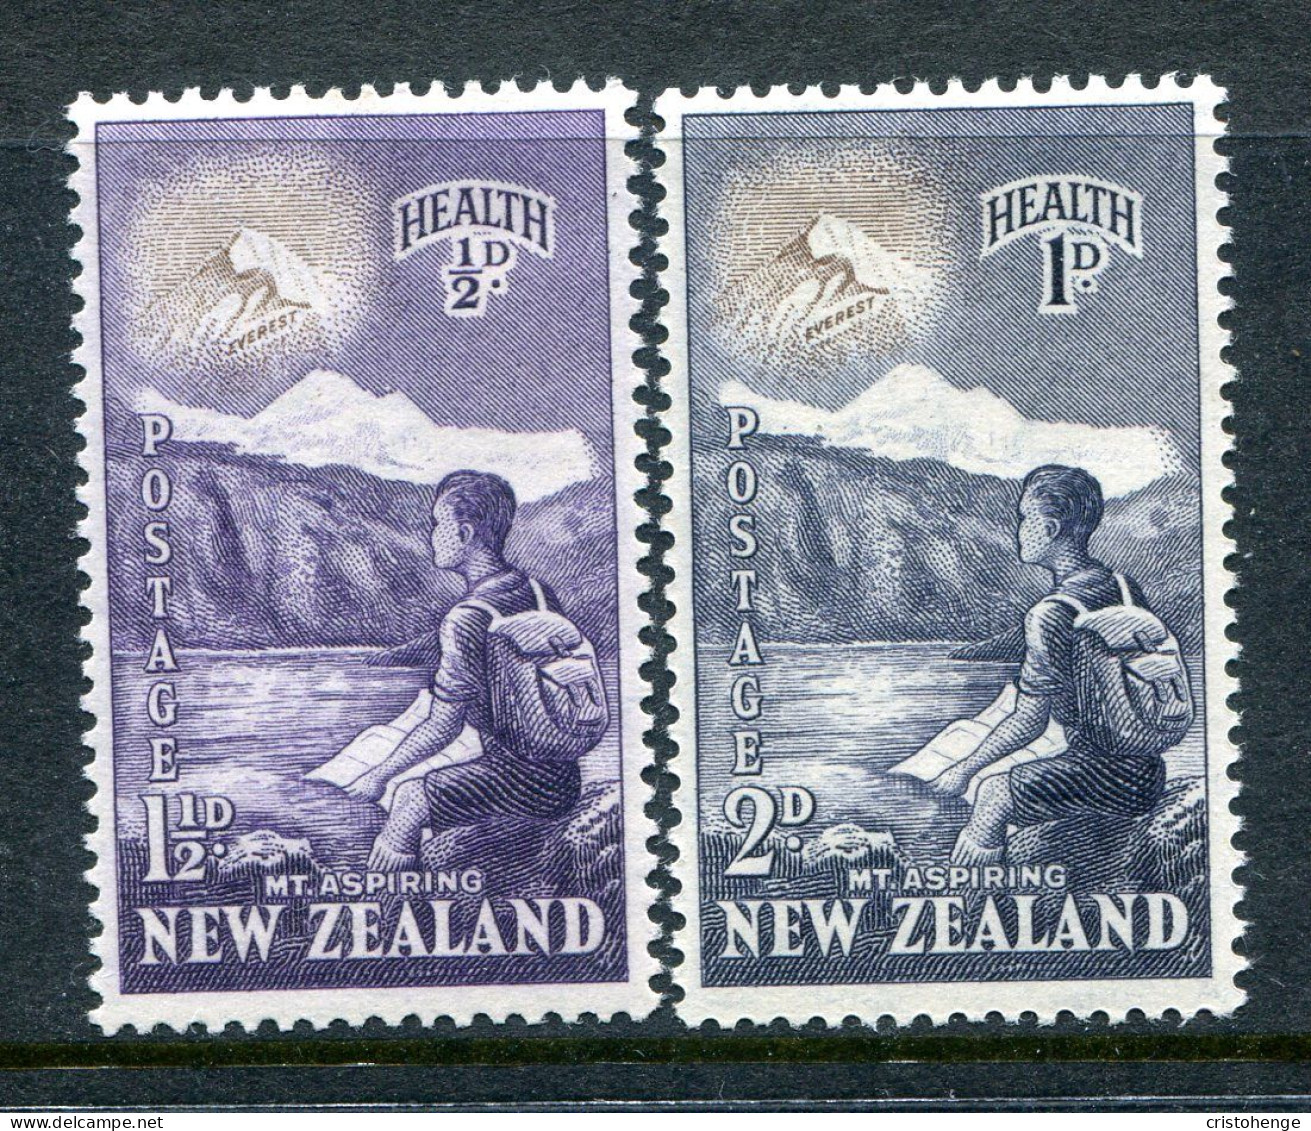 New Zealand 1954 Health - Climber, Mount Aspiring & Mt Everest Set HM (SG 737-738) - Ongebruikt